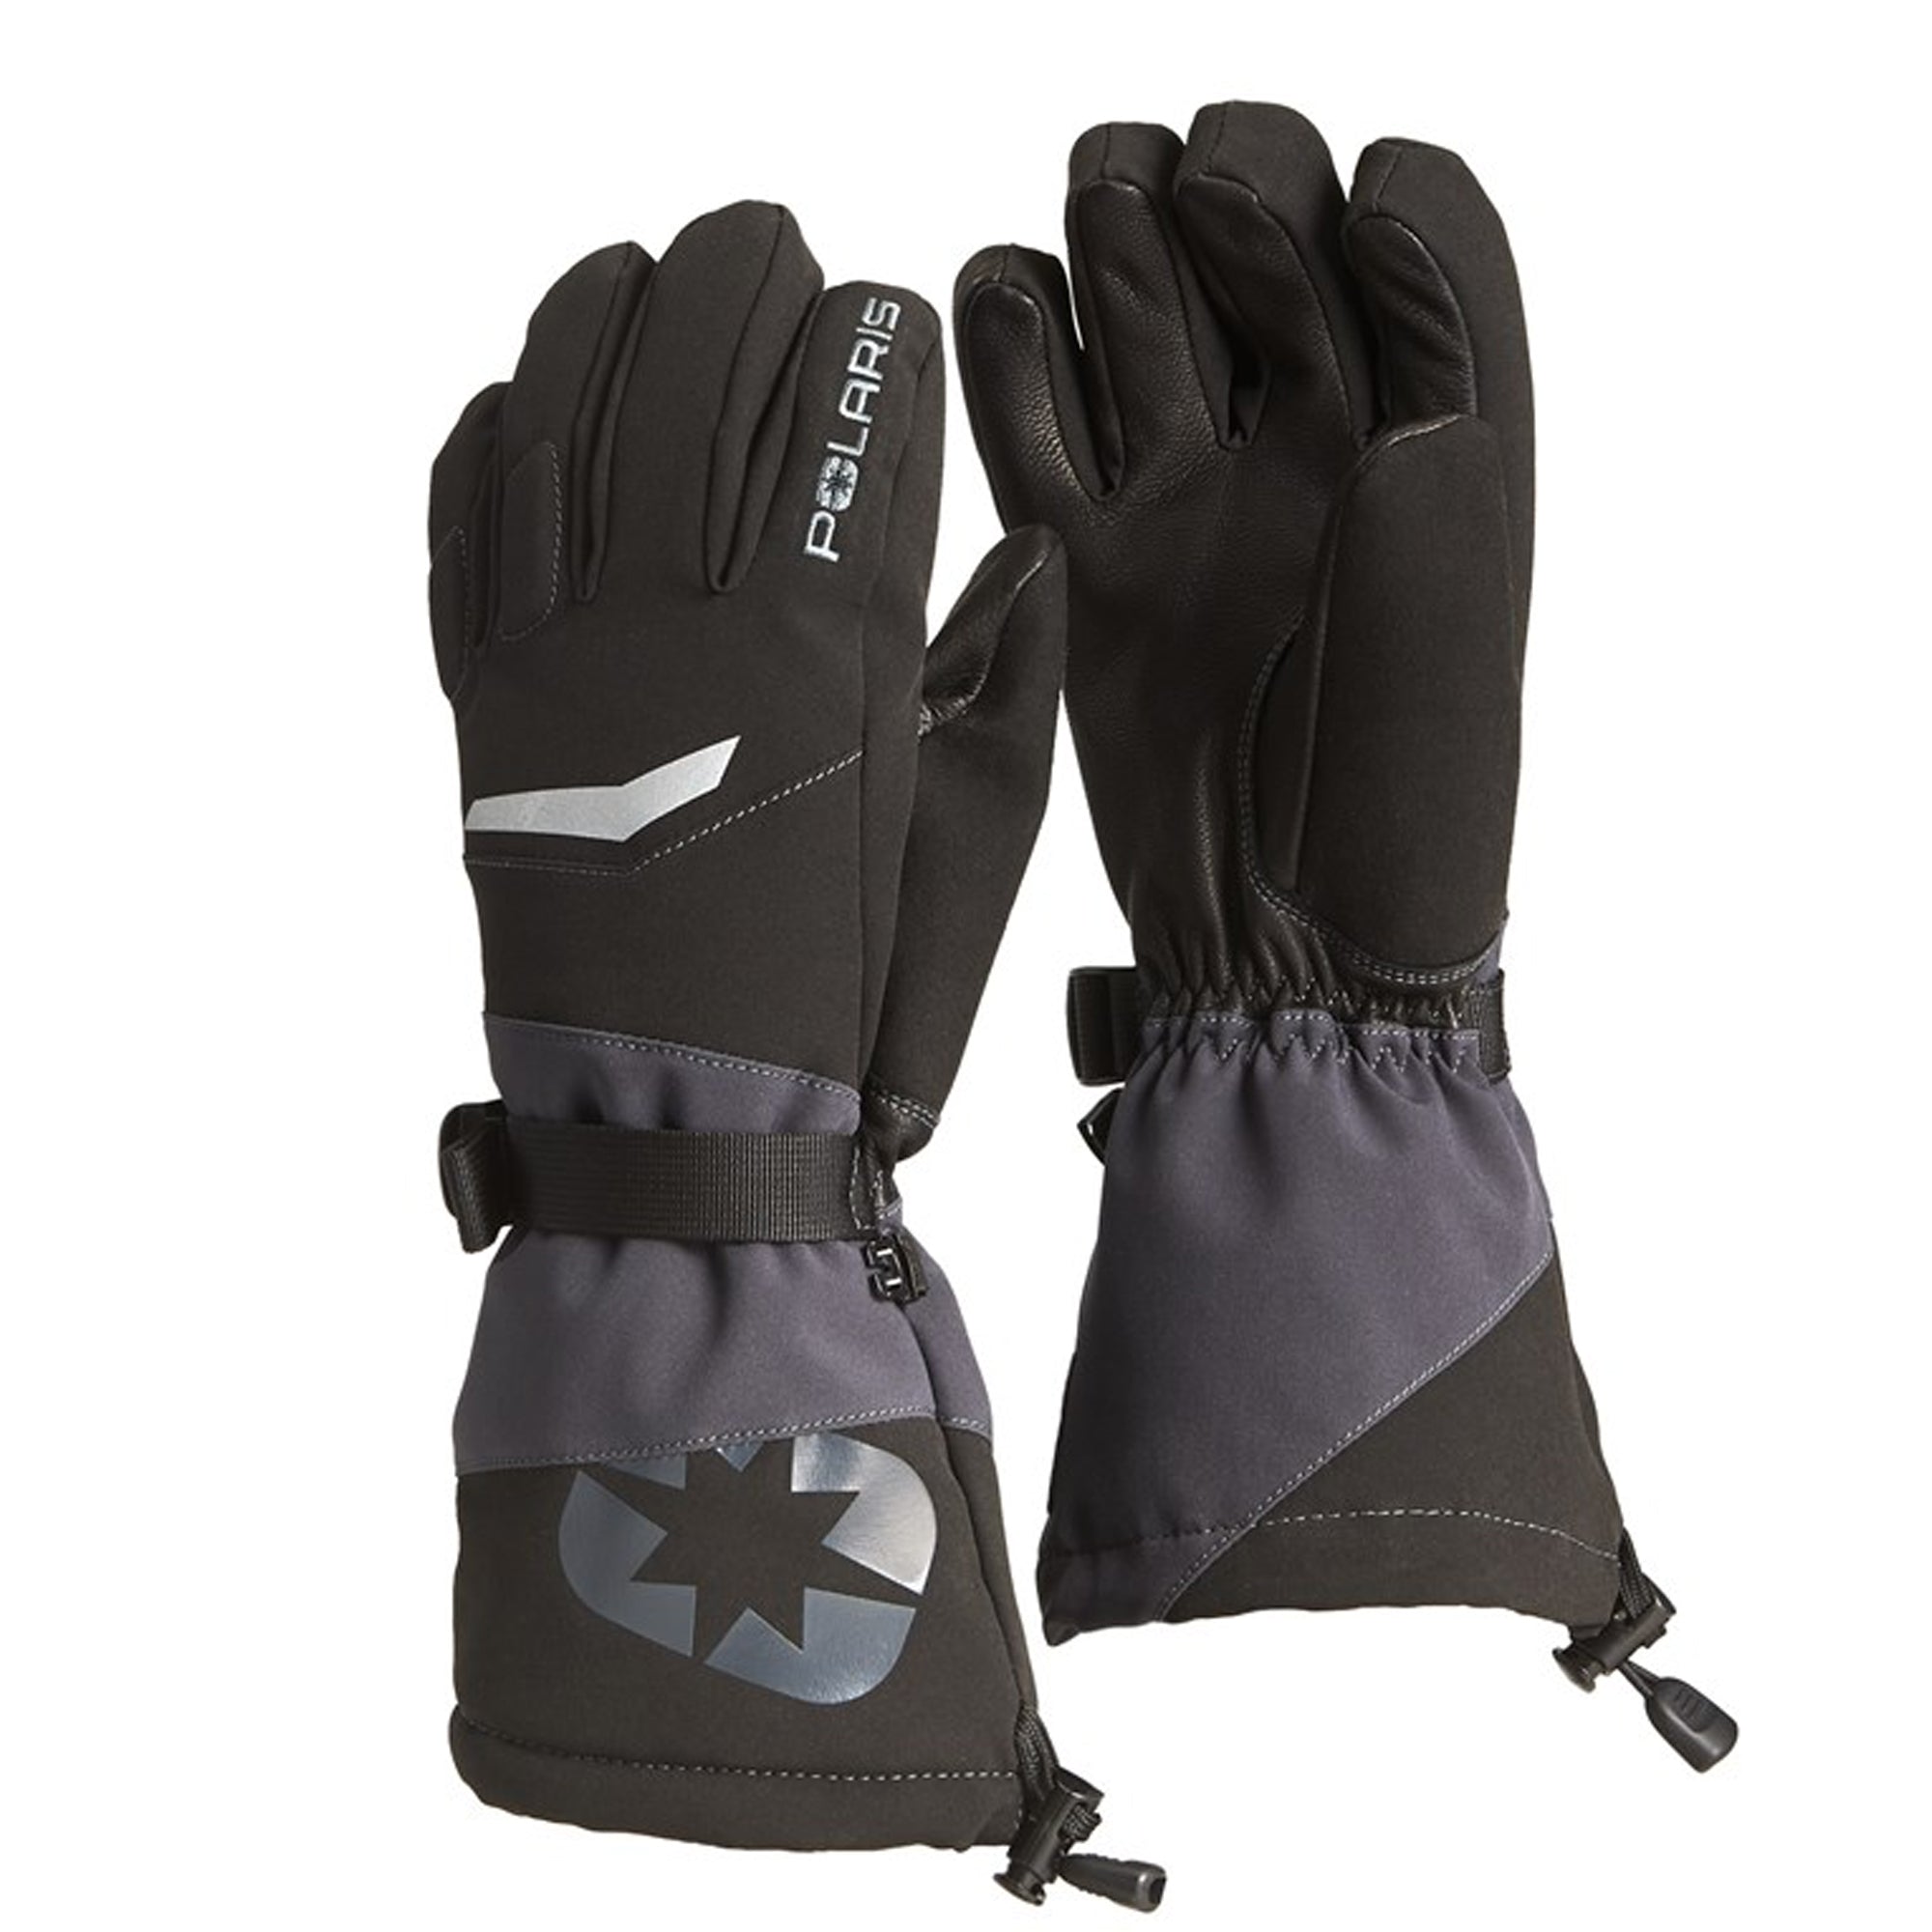 Polaris Northstar Gloves